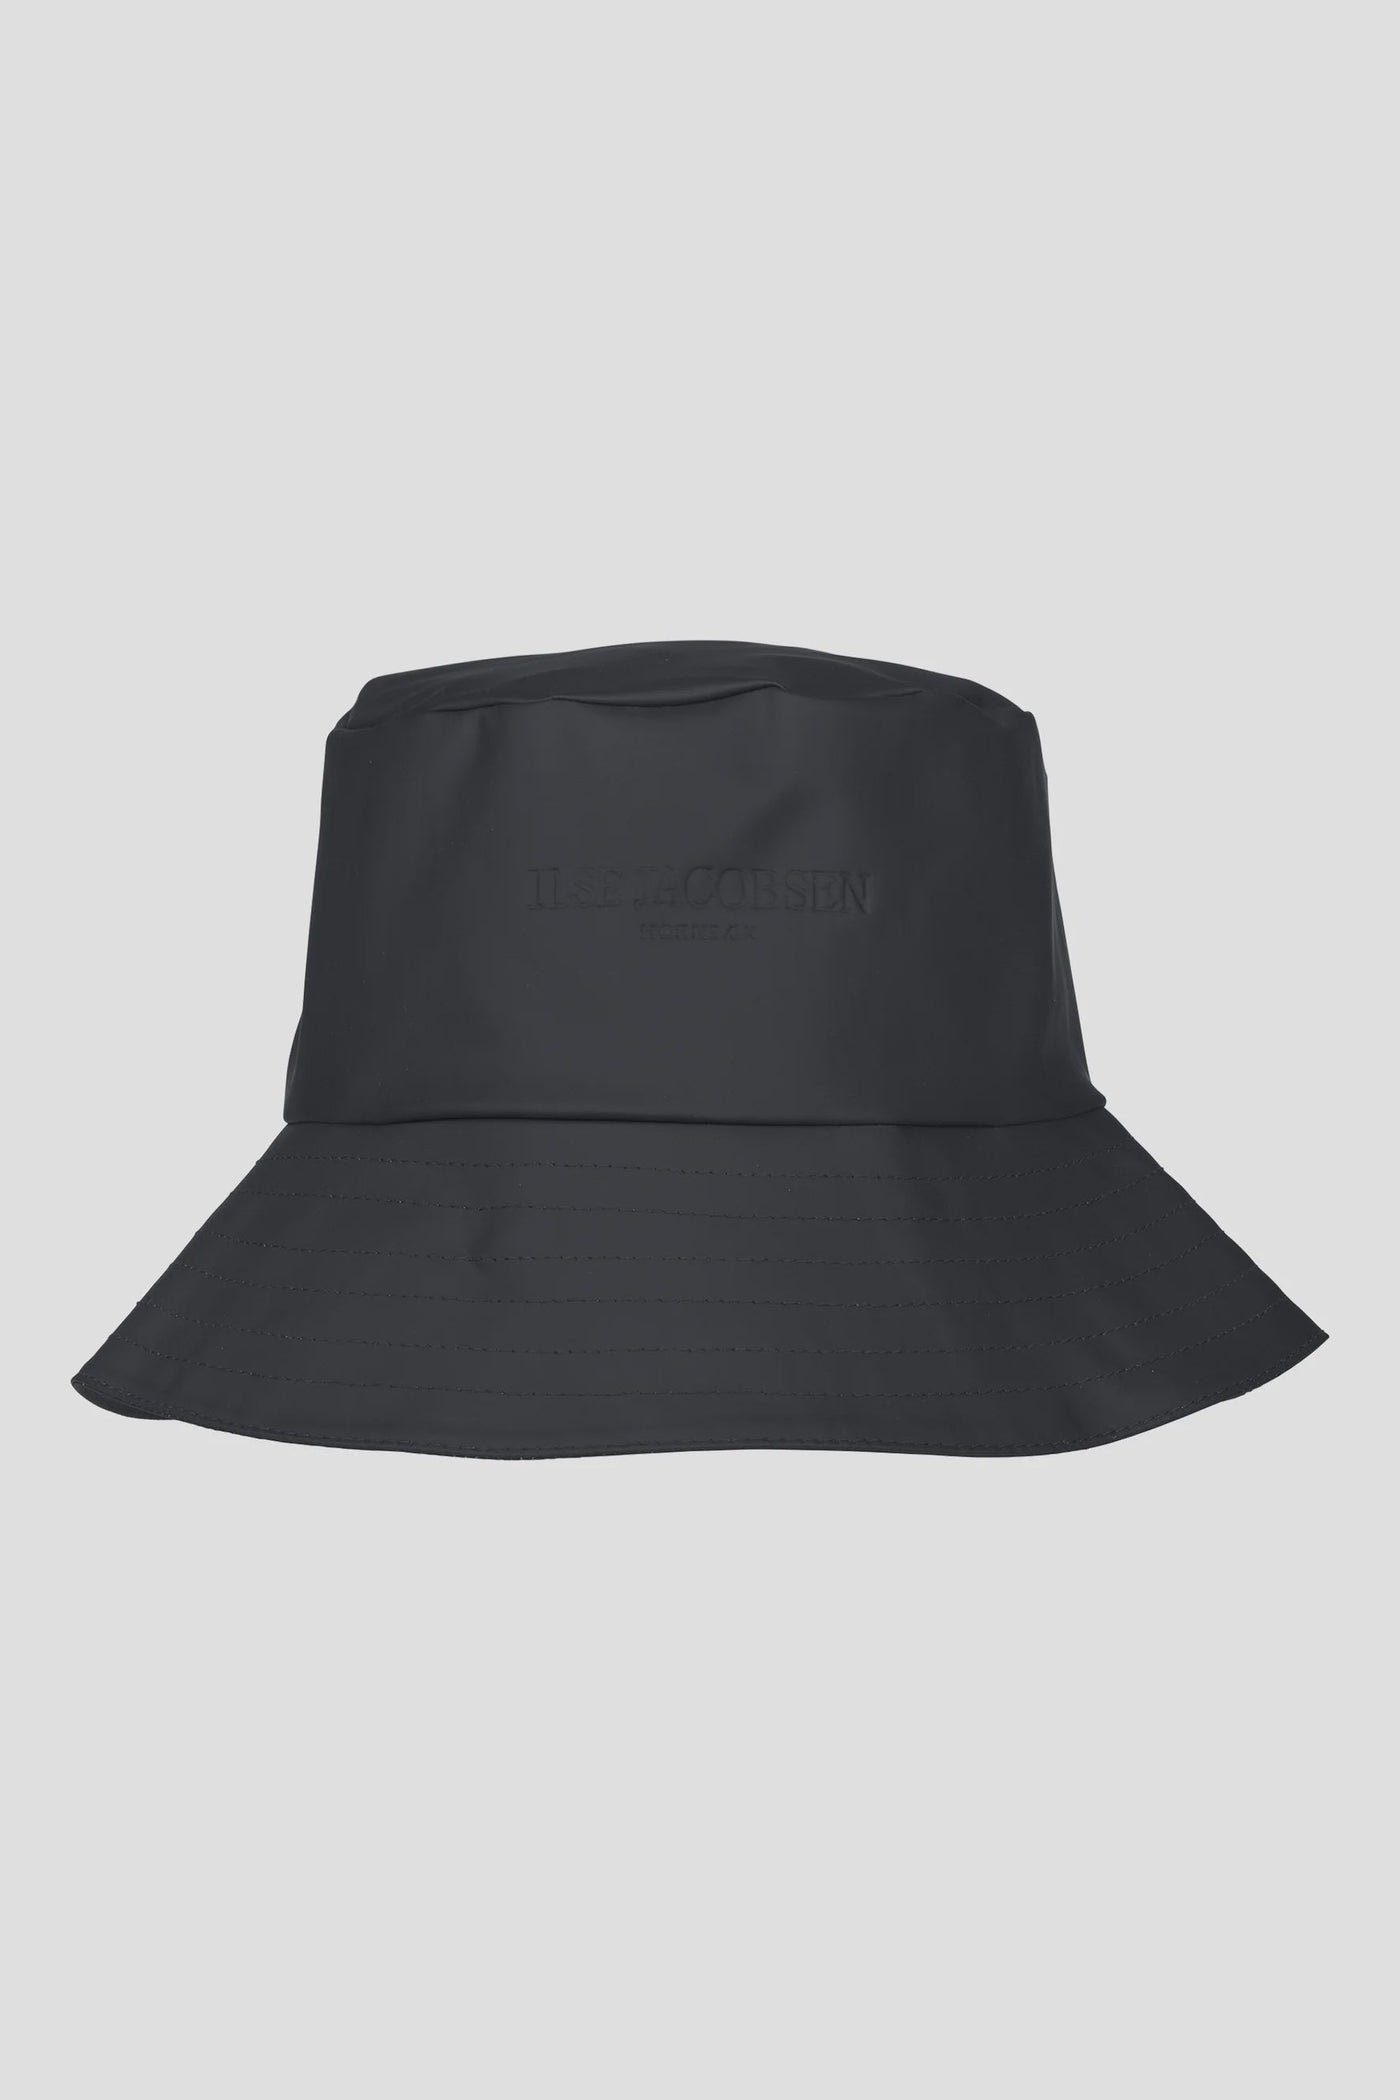 Ilse Jacobsen Rain Hat - Black-Womens-Ohh! By Gum - Shop Sustainable